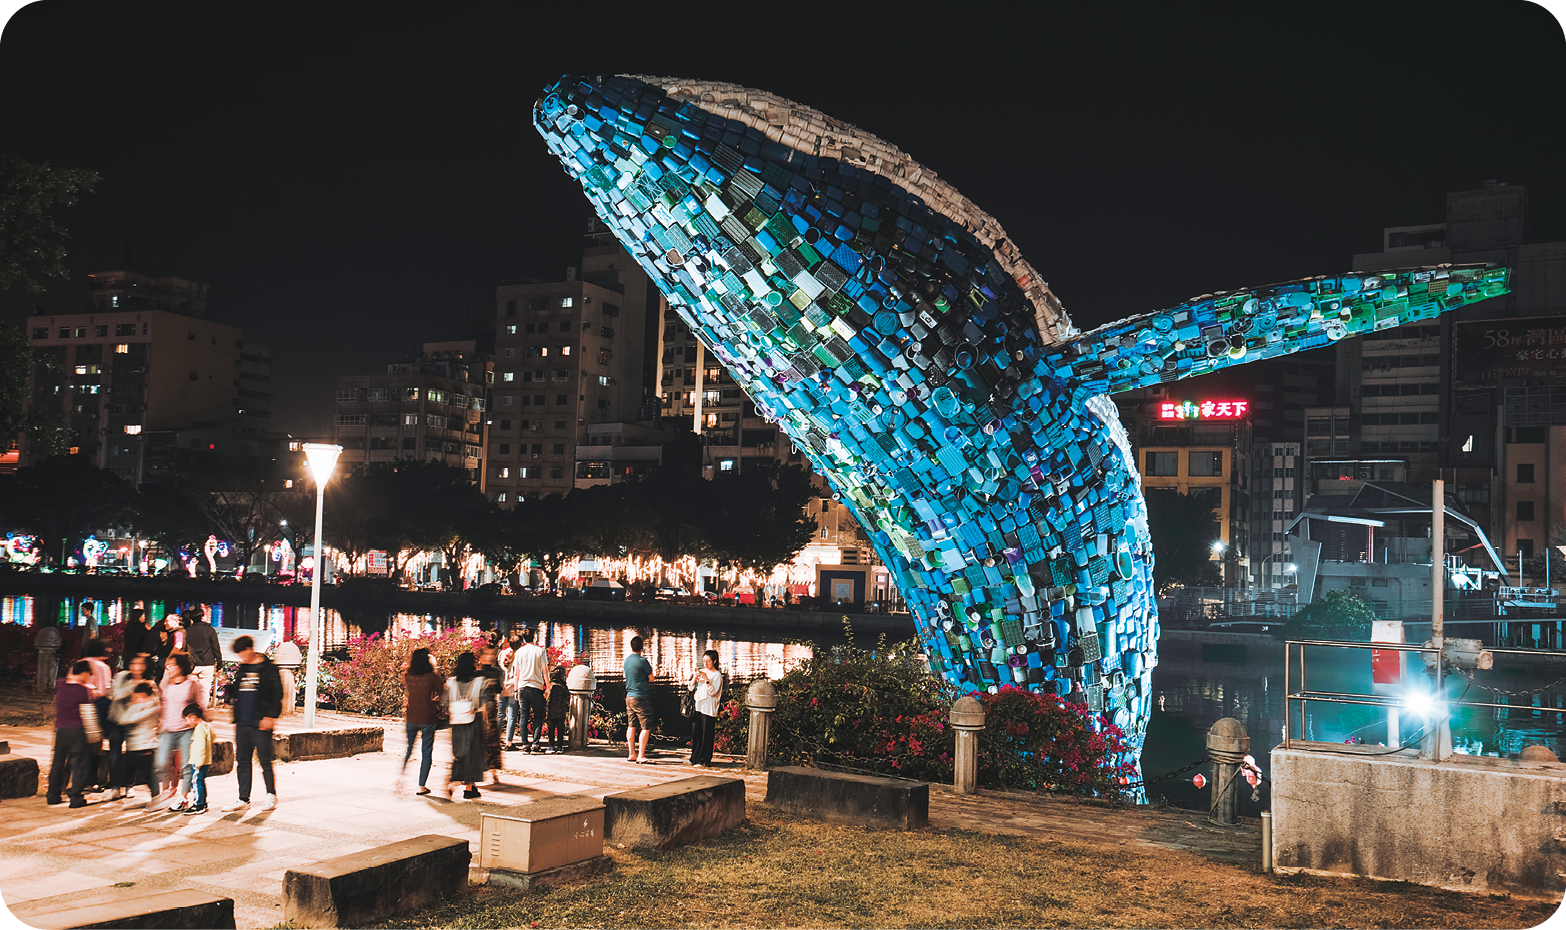 Escultura. Vista noturna de algumas pessoas em uma praça próximas a uma escultura gigante de um robusto animal marinho com corpo azul brilhante e nadadeiras longas.